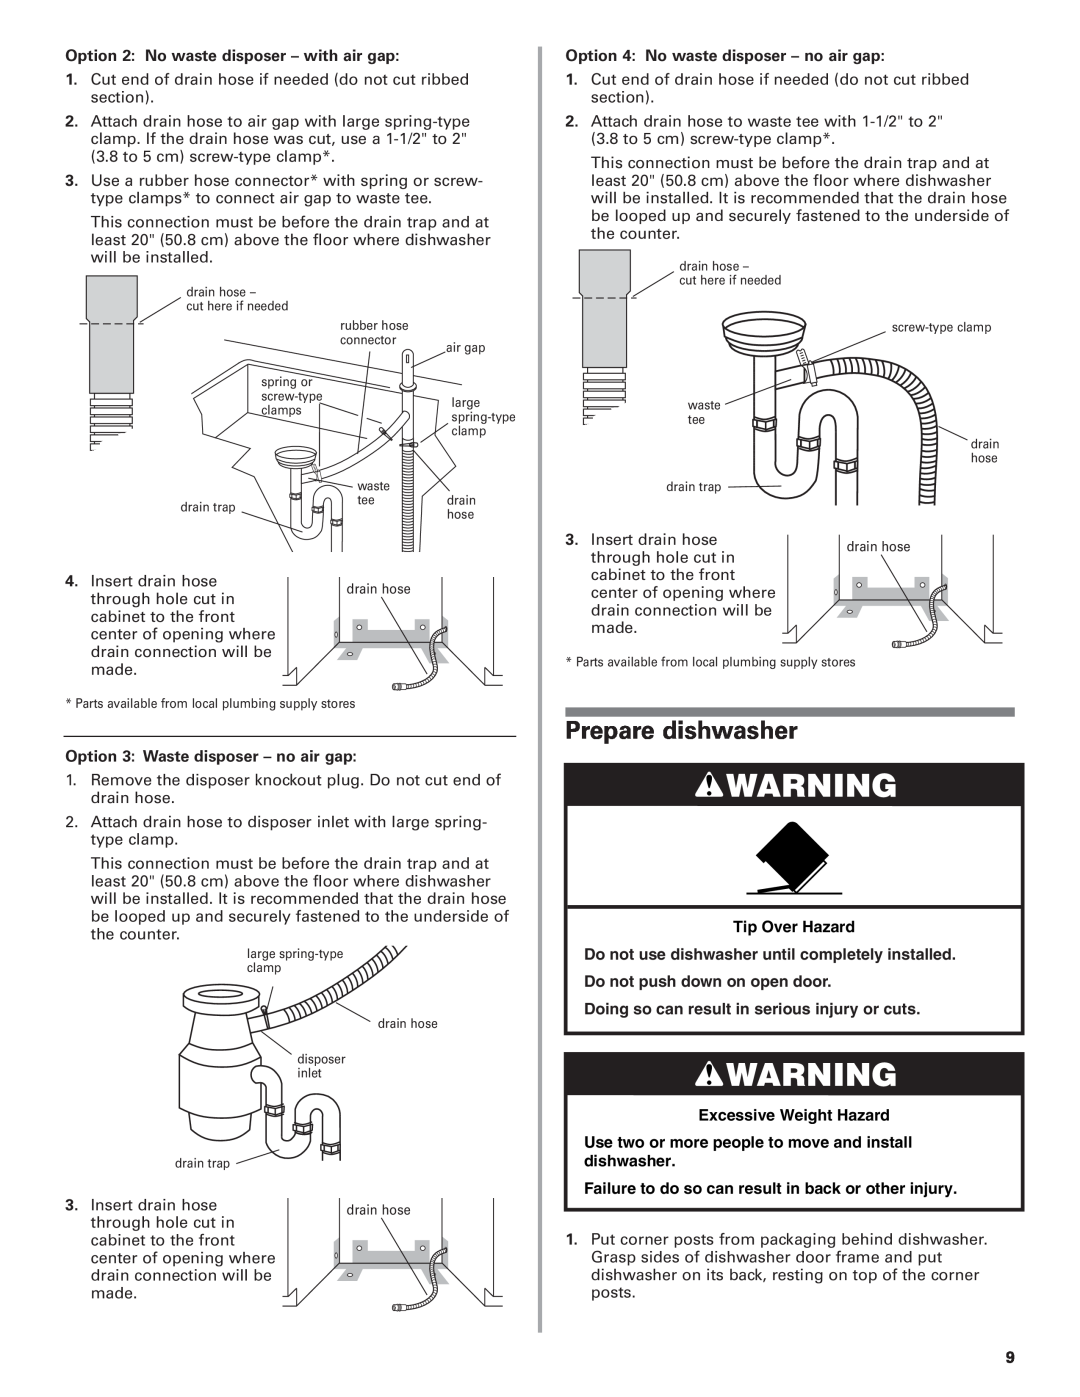 KitchenAid 8573157 Prepare dishwasher, Tip Over Hazard, Excessive Weight Hazard, Option 2 No waste disposer - with air gap 